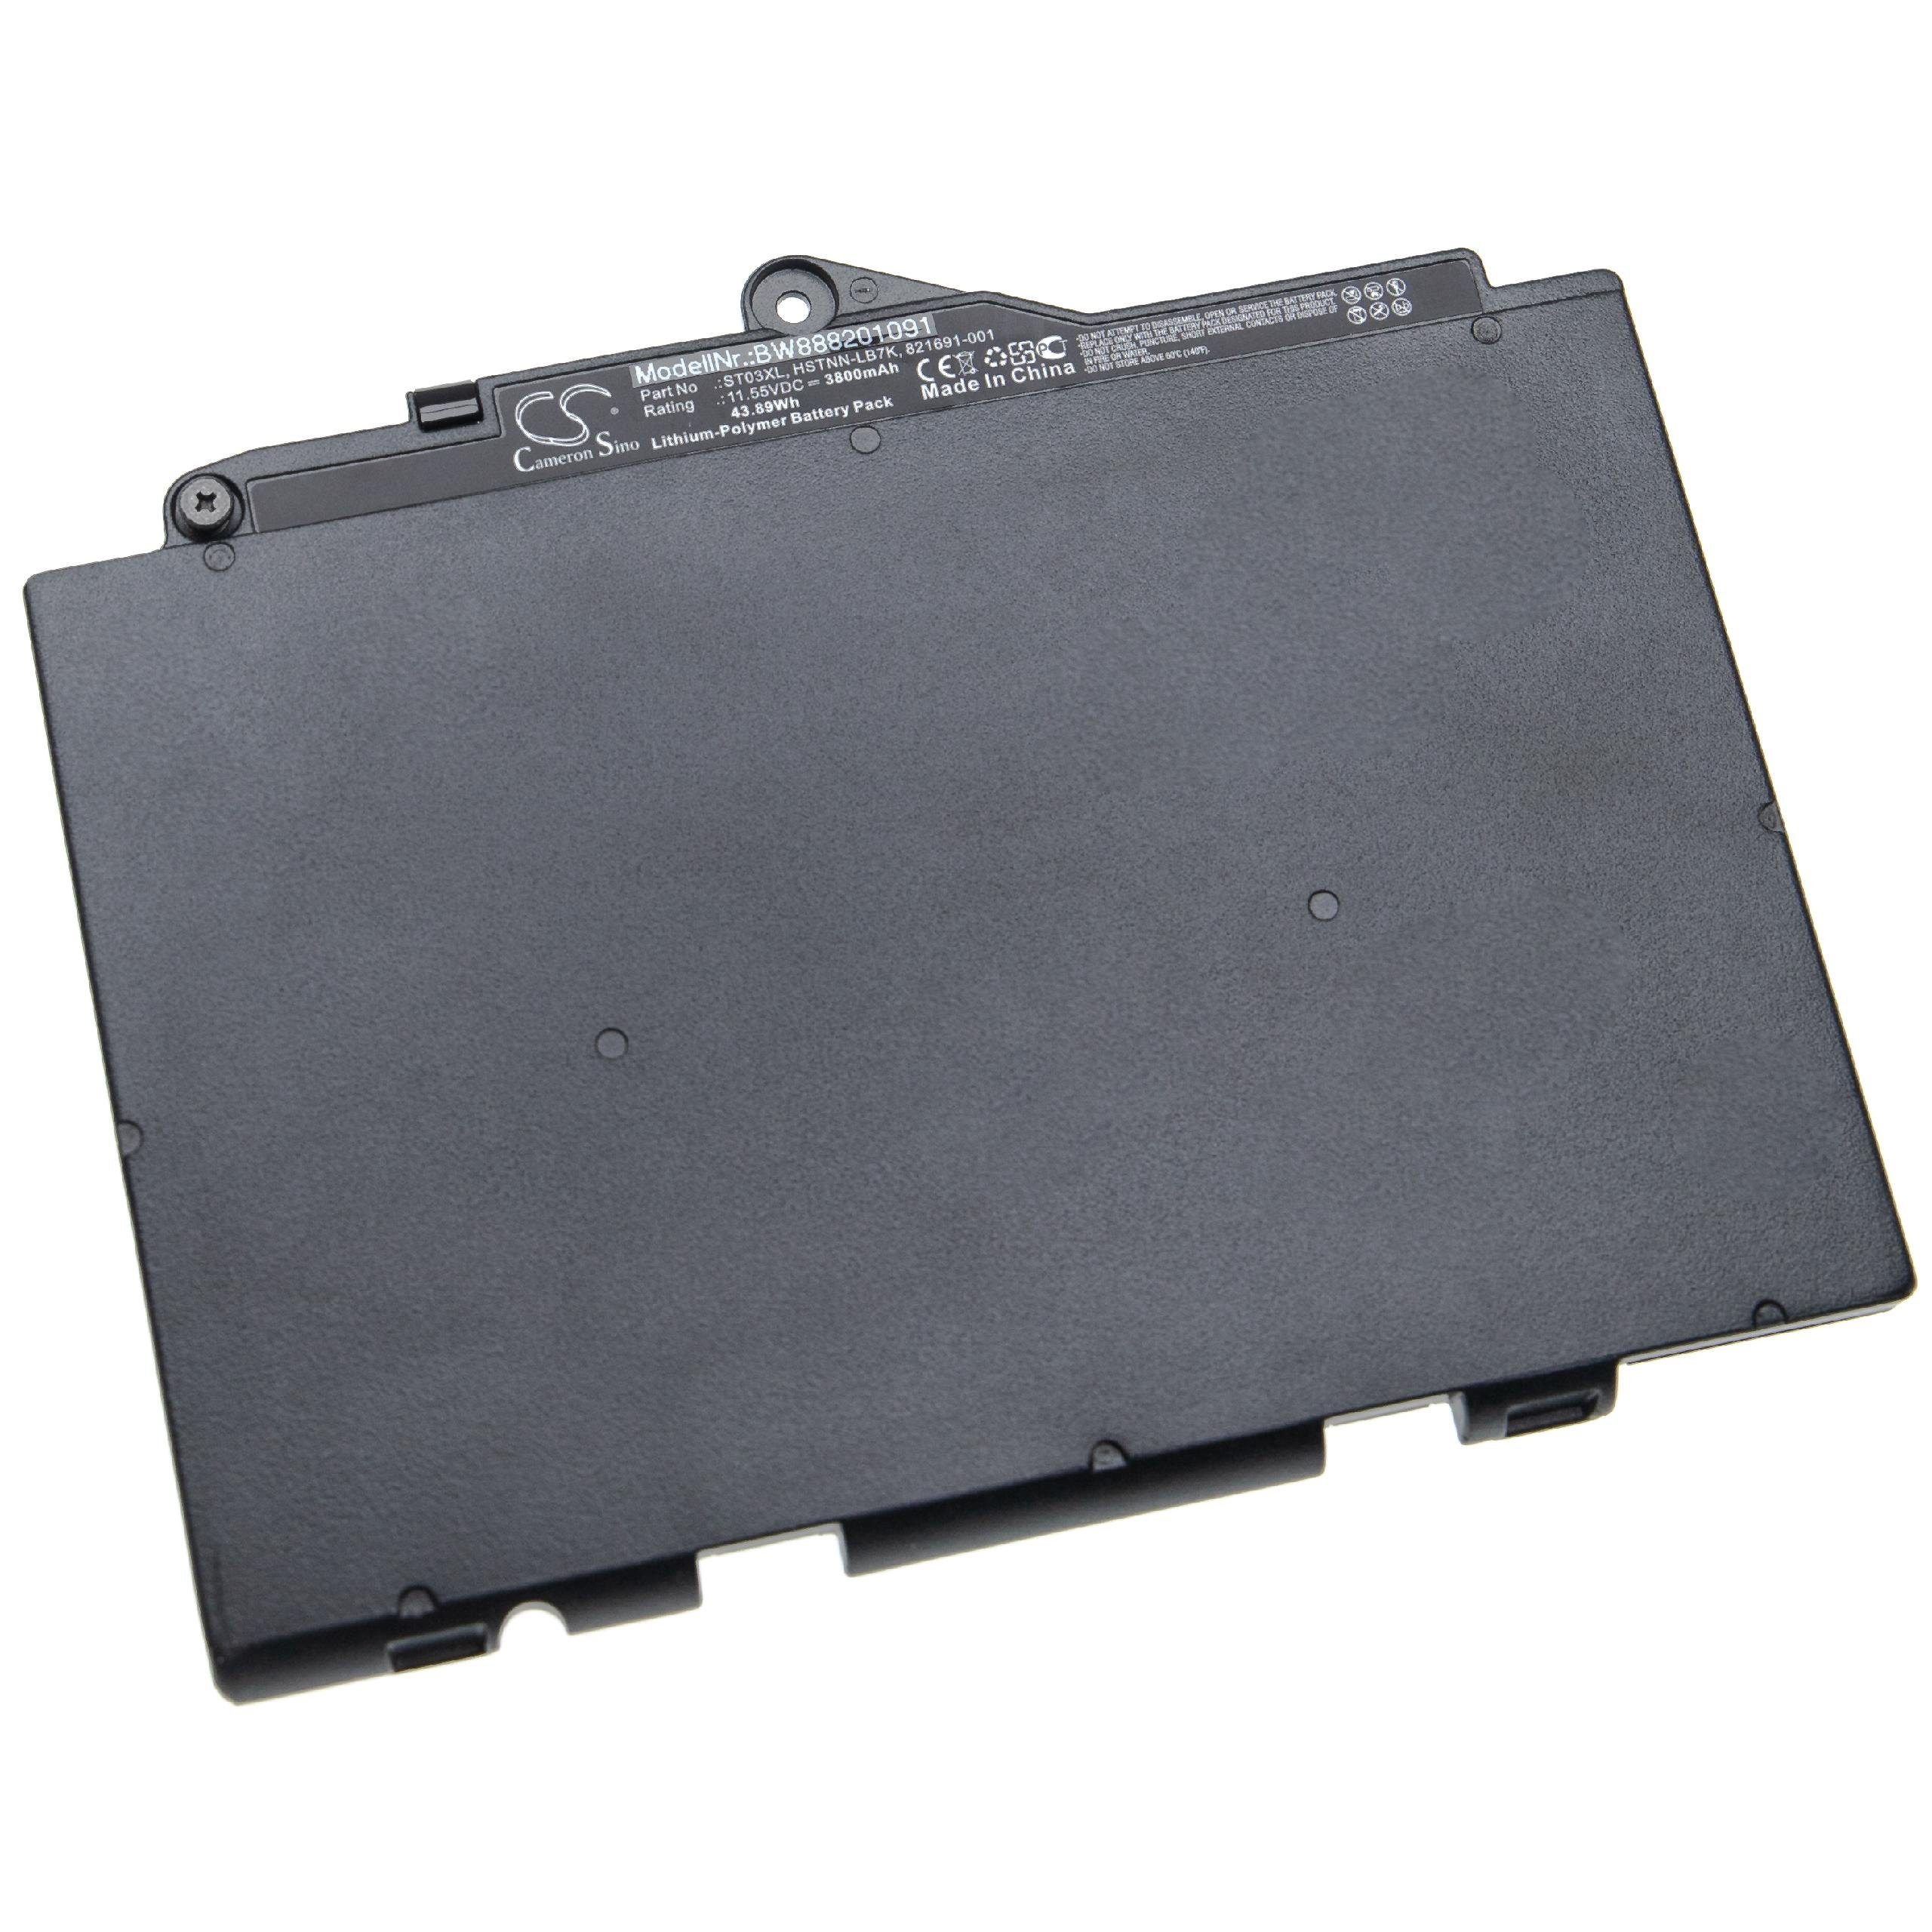 vhbw passend für HP EliteBook 3800 G4 1LH27PC, mAh G4 Laptop-Akku 828 828 828 G4 1LH23PC